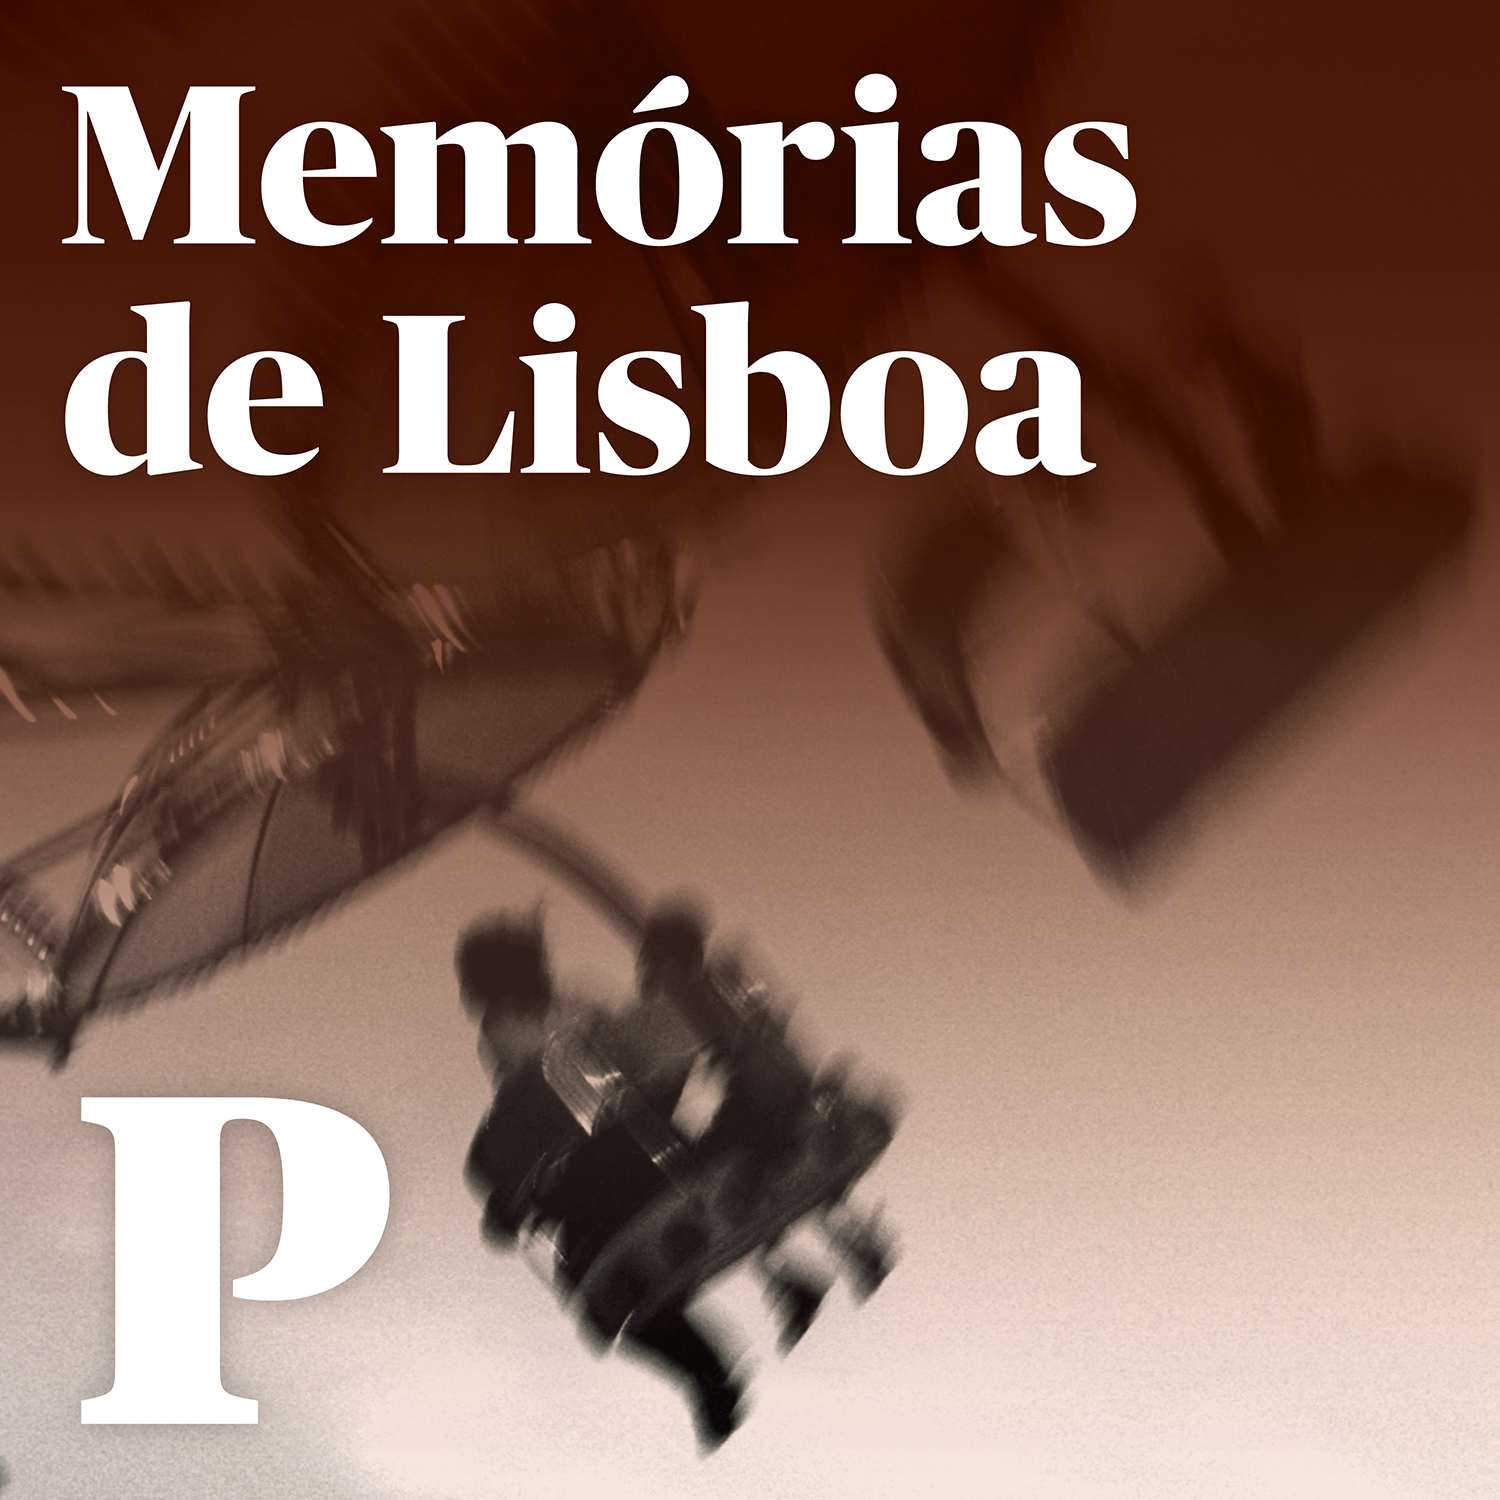 Memórias de Lisboa podcast show image